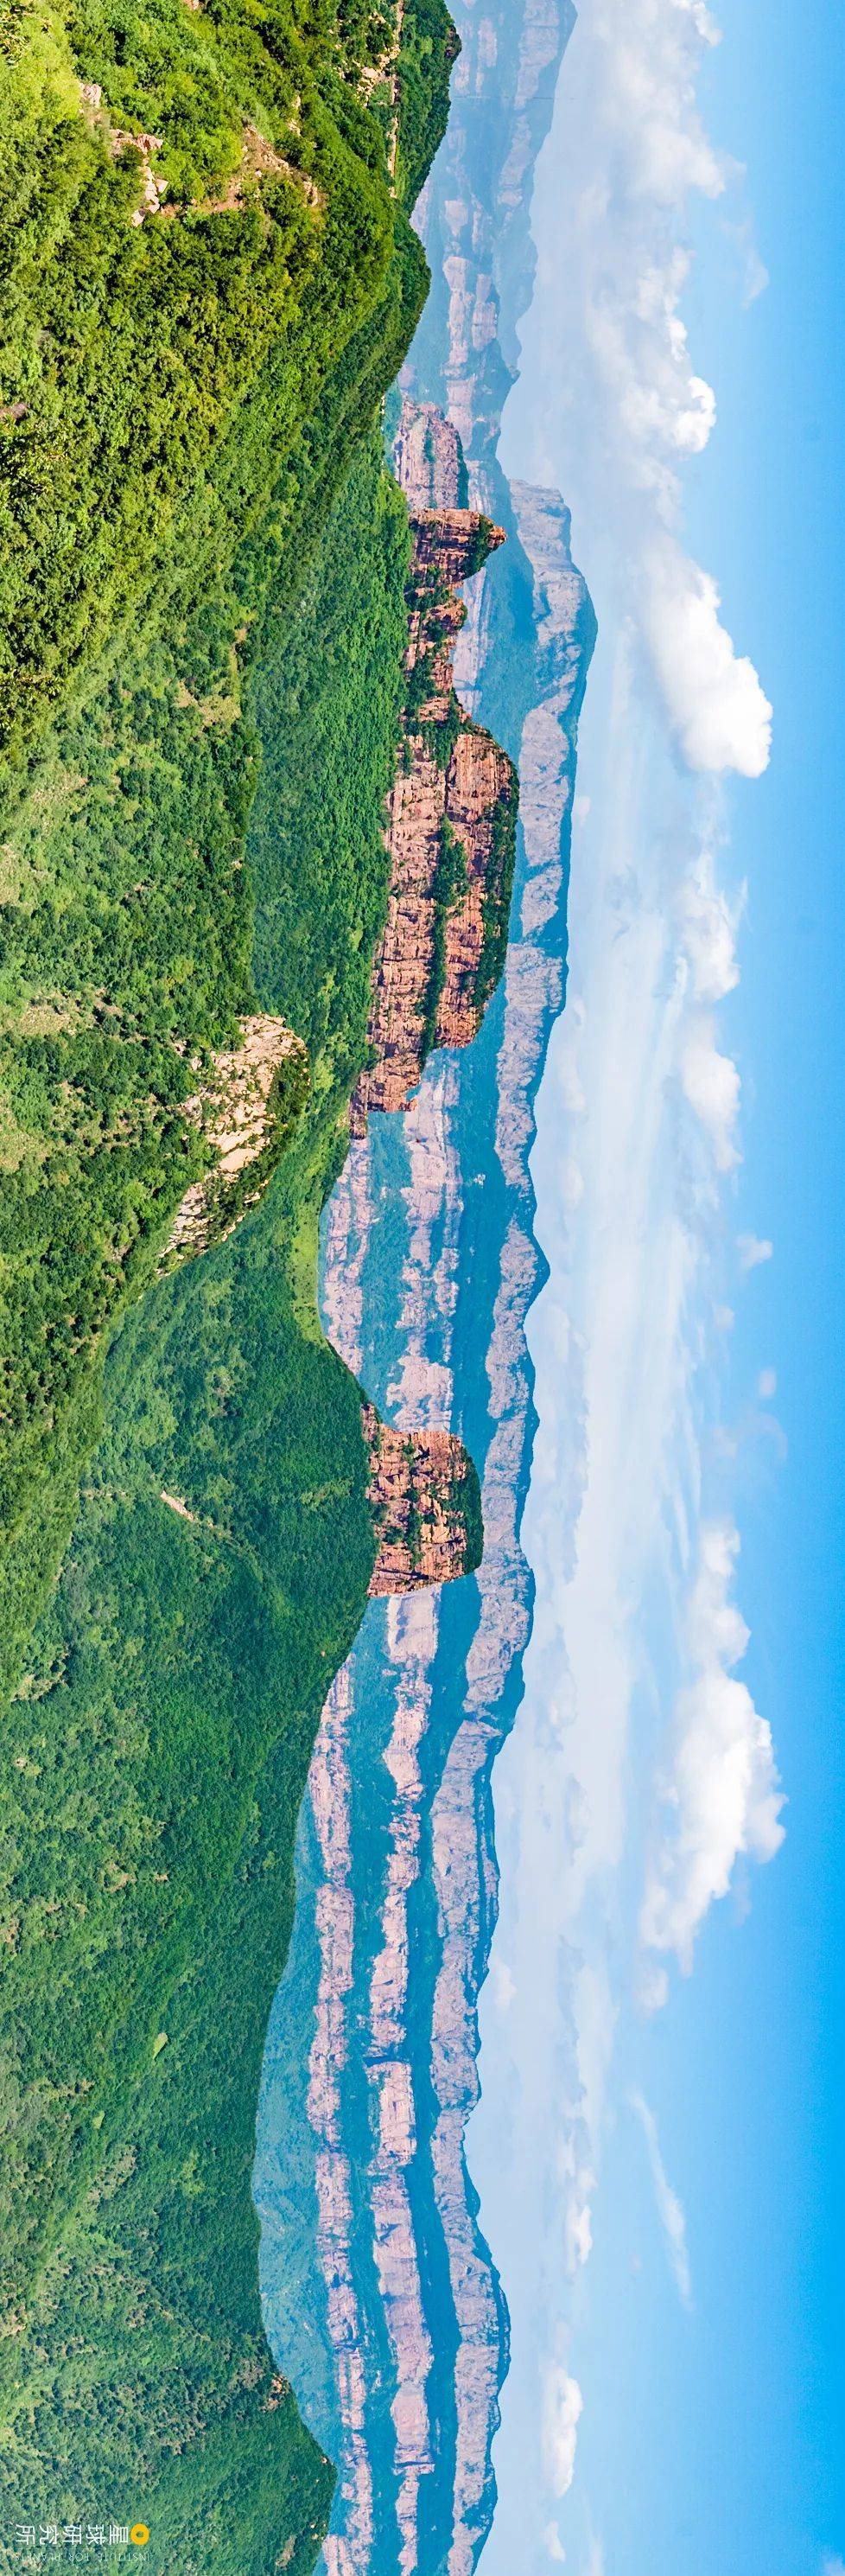 河北赞皇嶂石岩的长崖。摄影师@栗剑兵